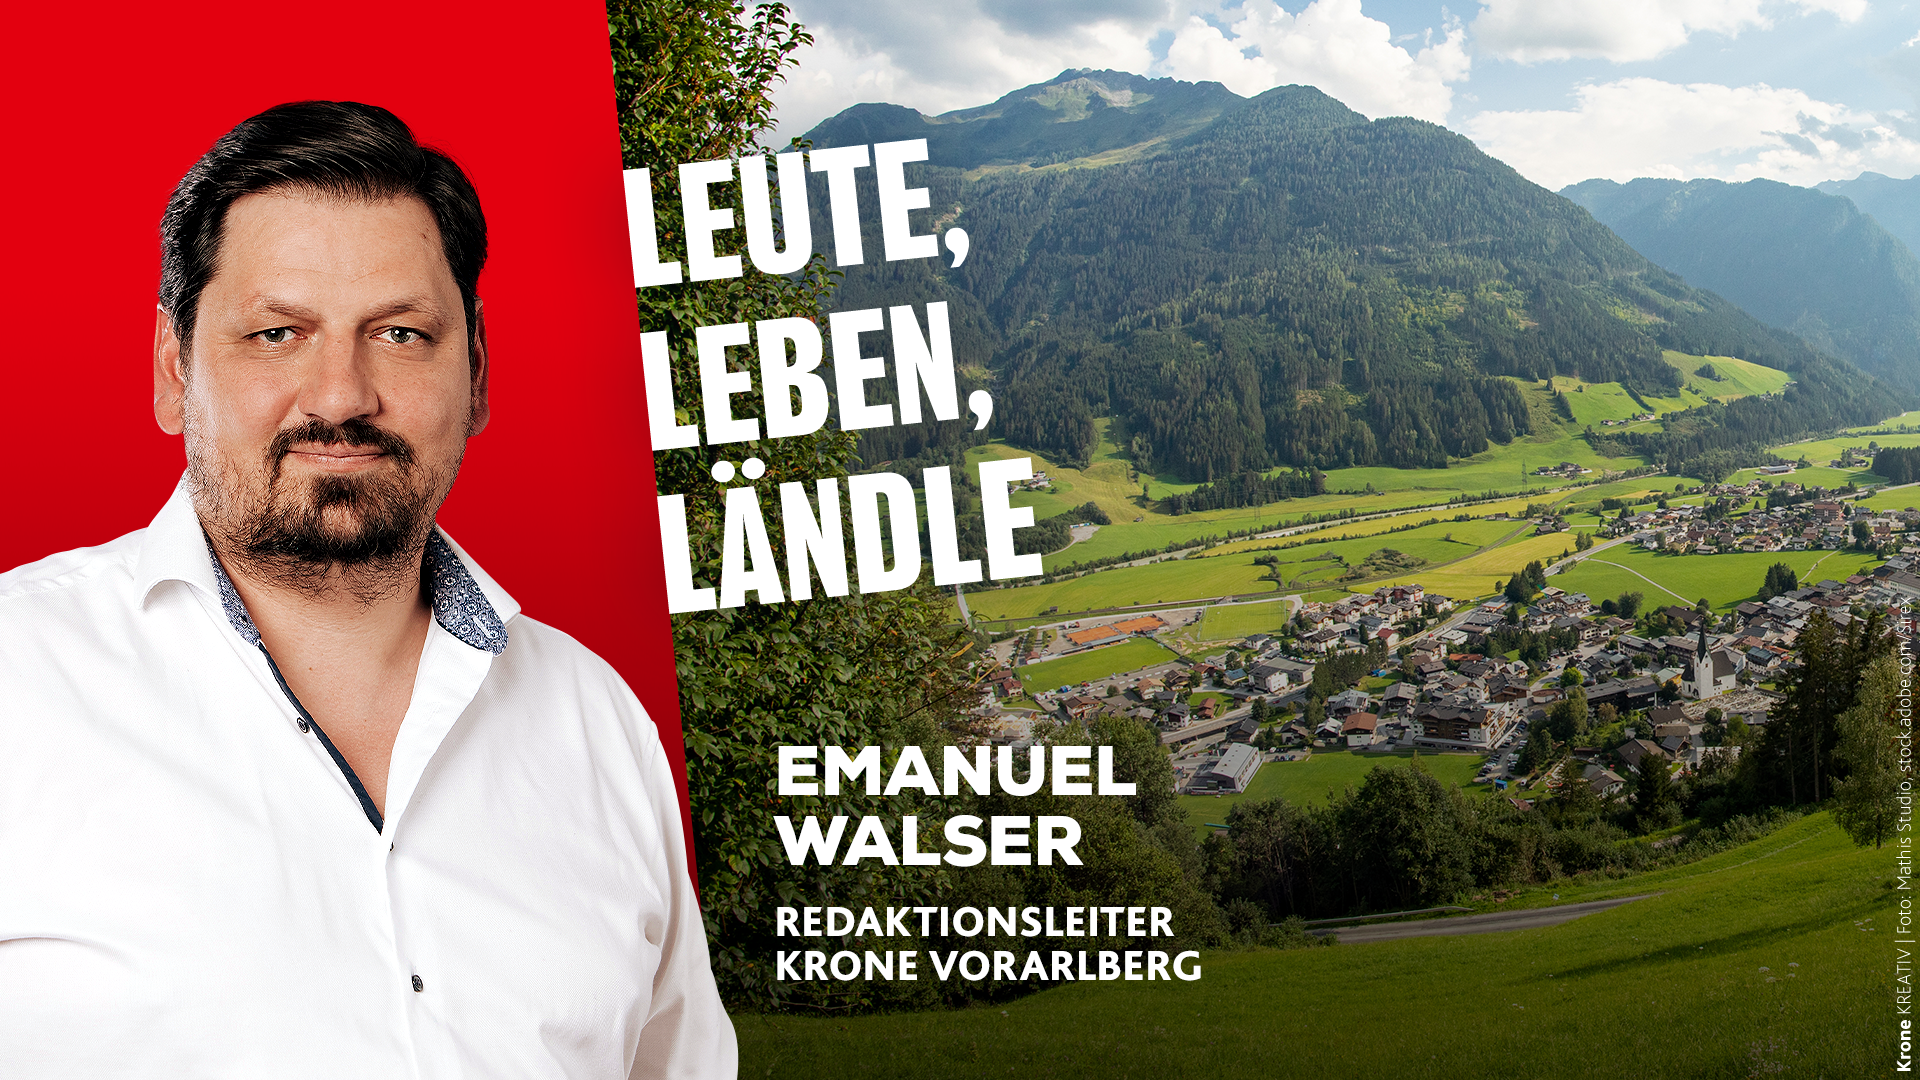 Krone Vorarlberg Redaktionsleiter Emanuel Walser informiert Sie über die Nachrichten aus dem Ländle. (Bild: mathis.studio)